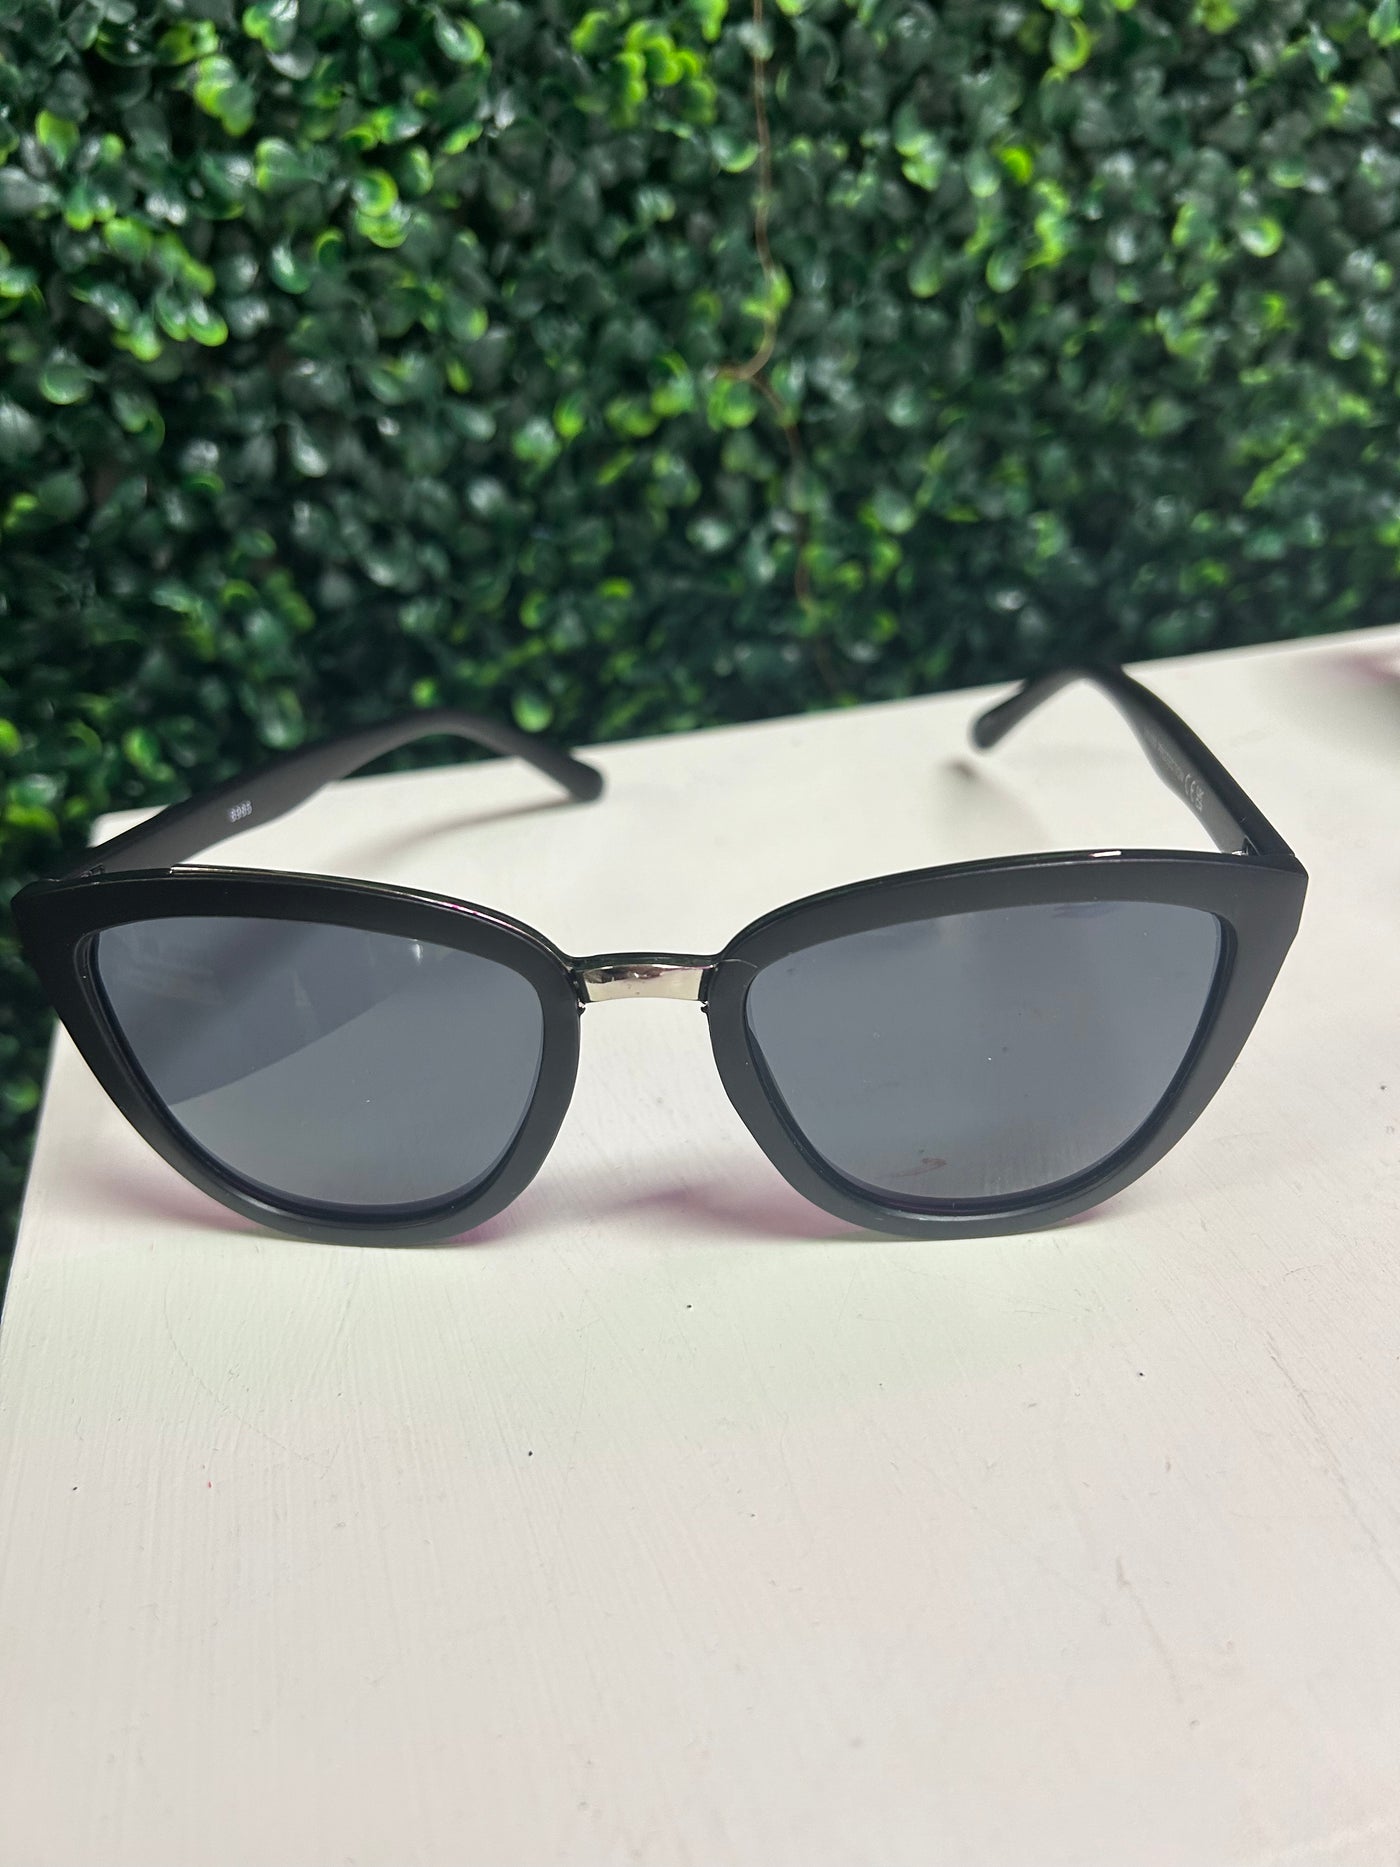 Black & Silver Sunglasses